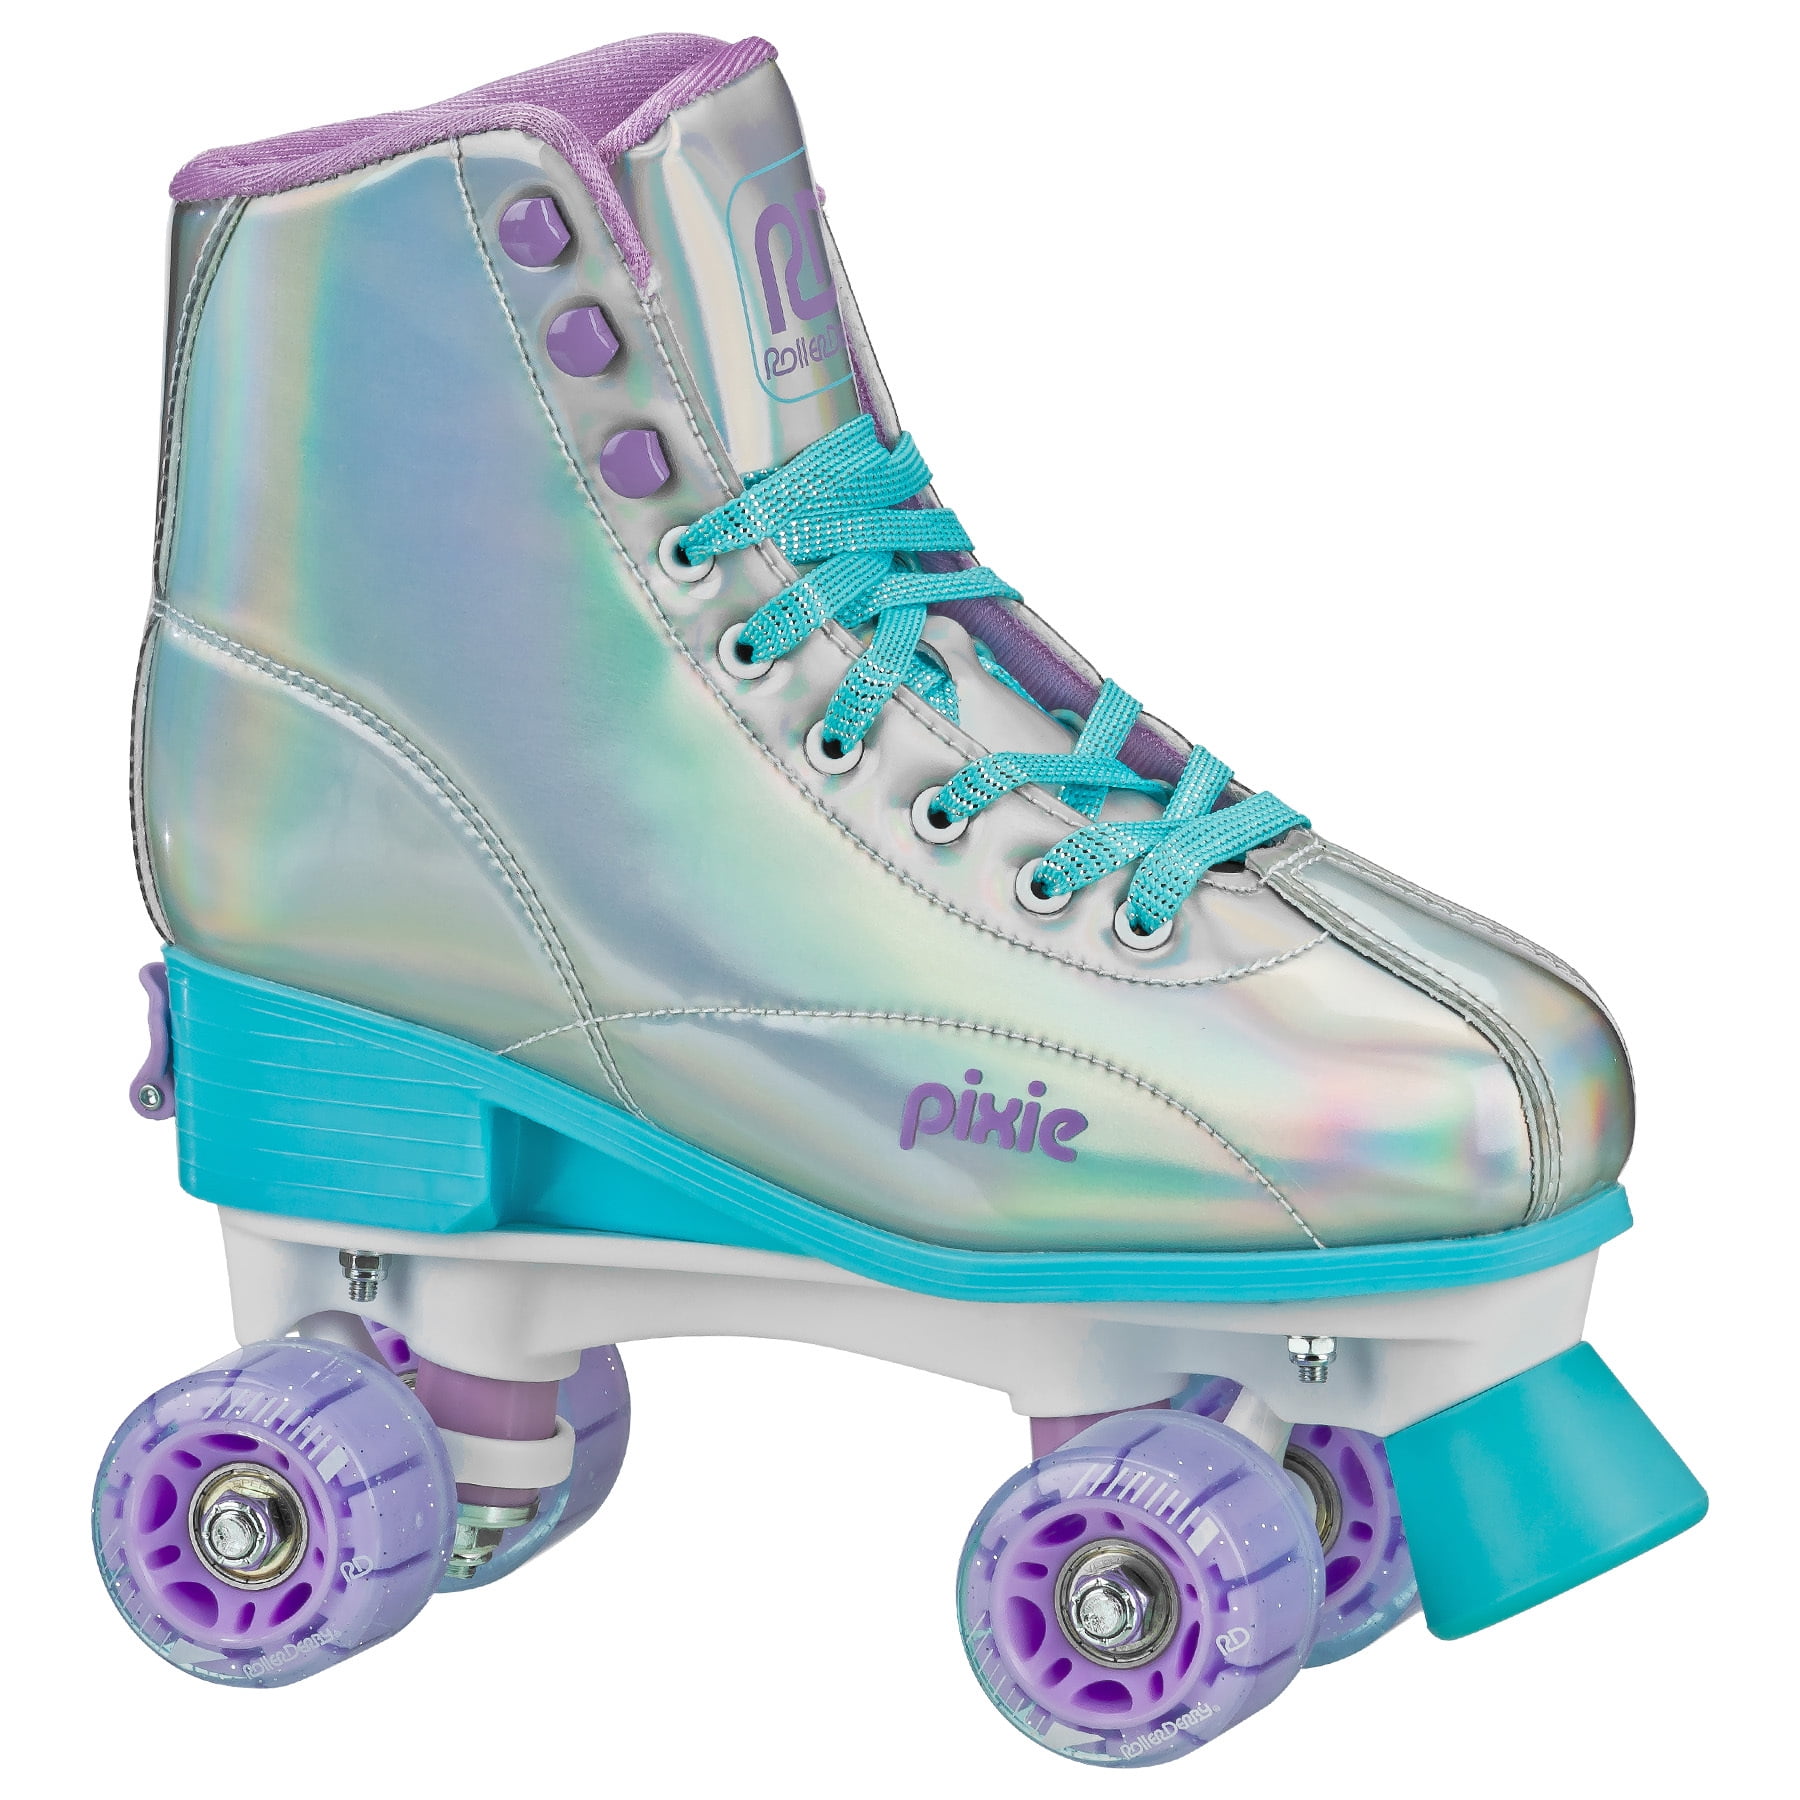 Adjustable Kids Girls Boys Rink Skates 4 Wheels Quad Roller Skates Skating 